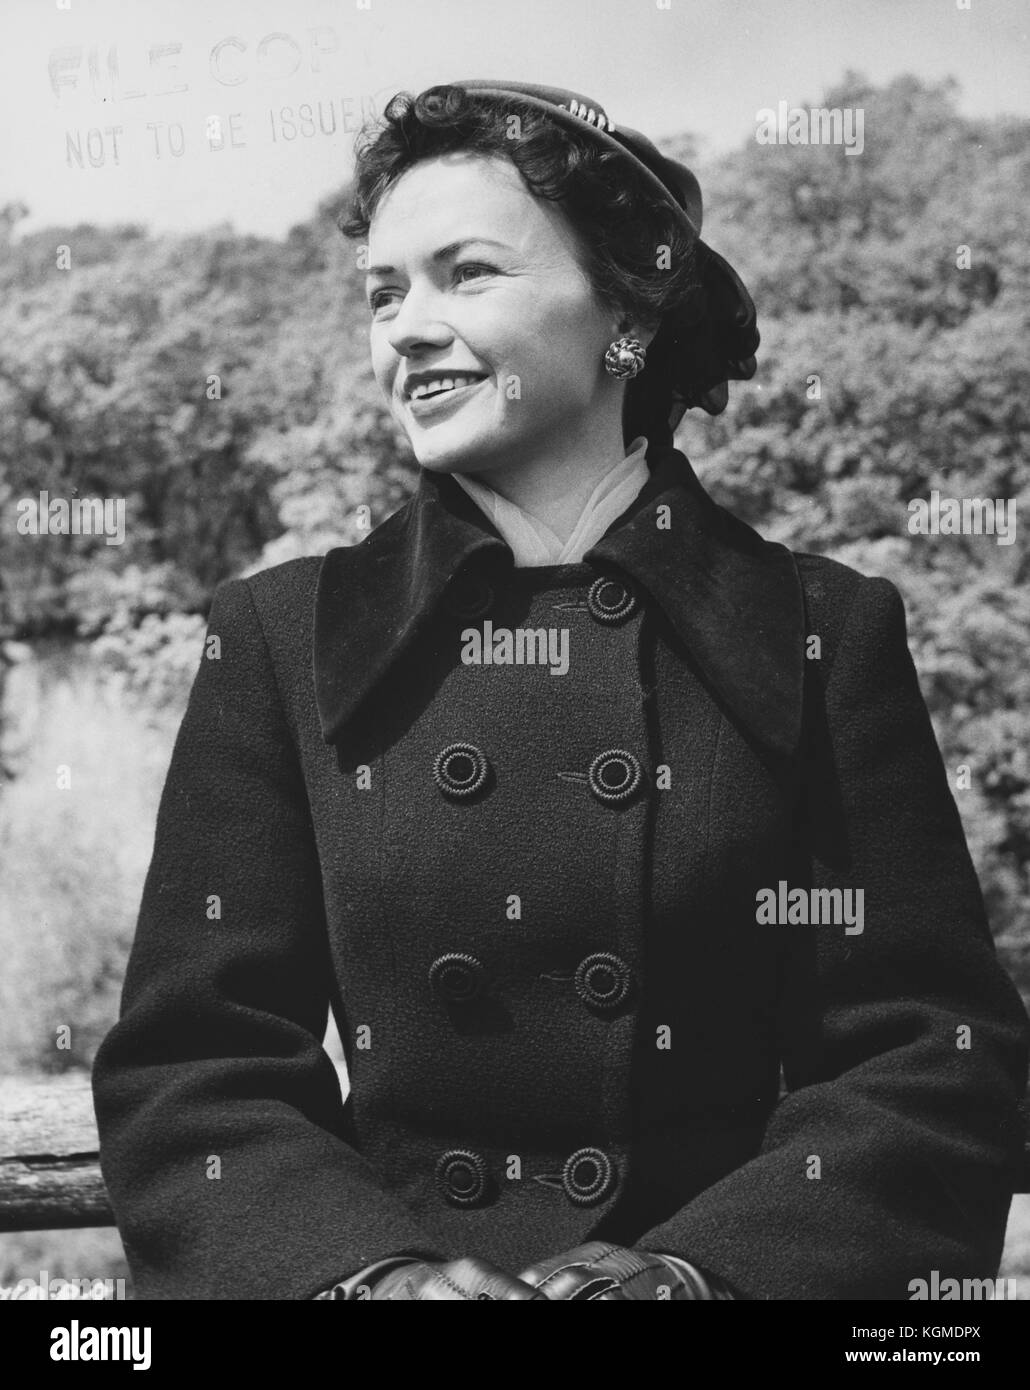 Die Maggie (1954) Stockfoto